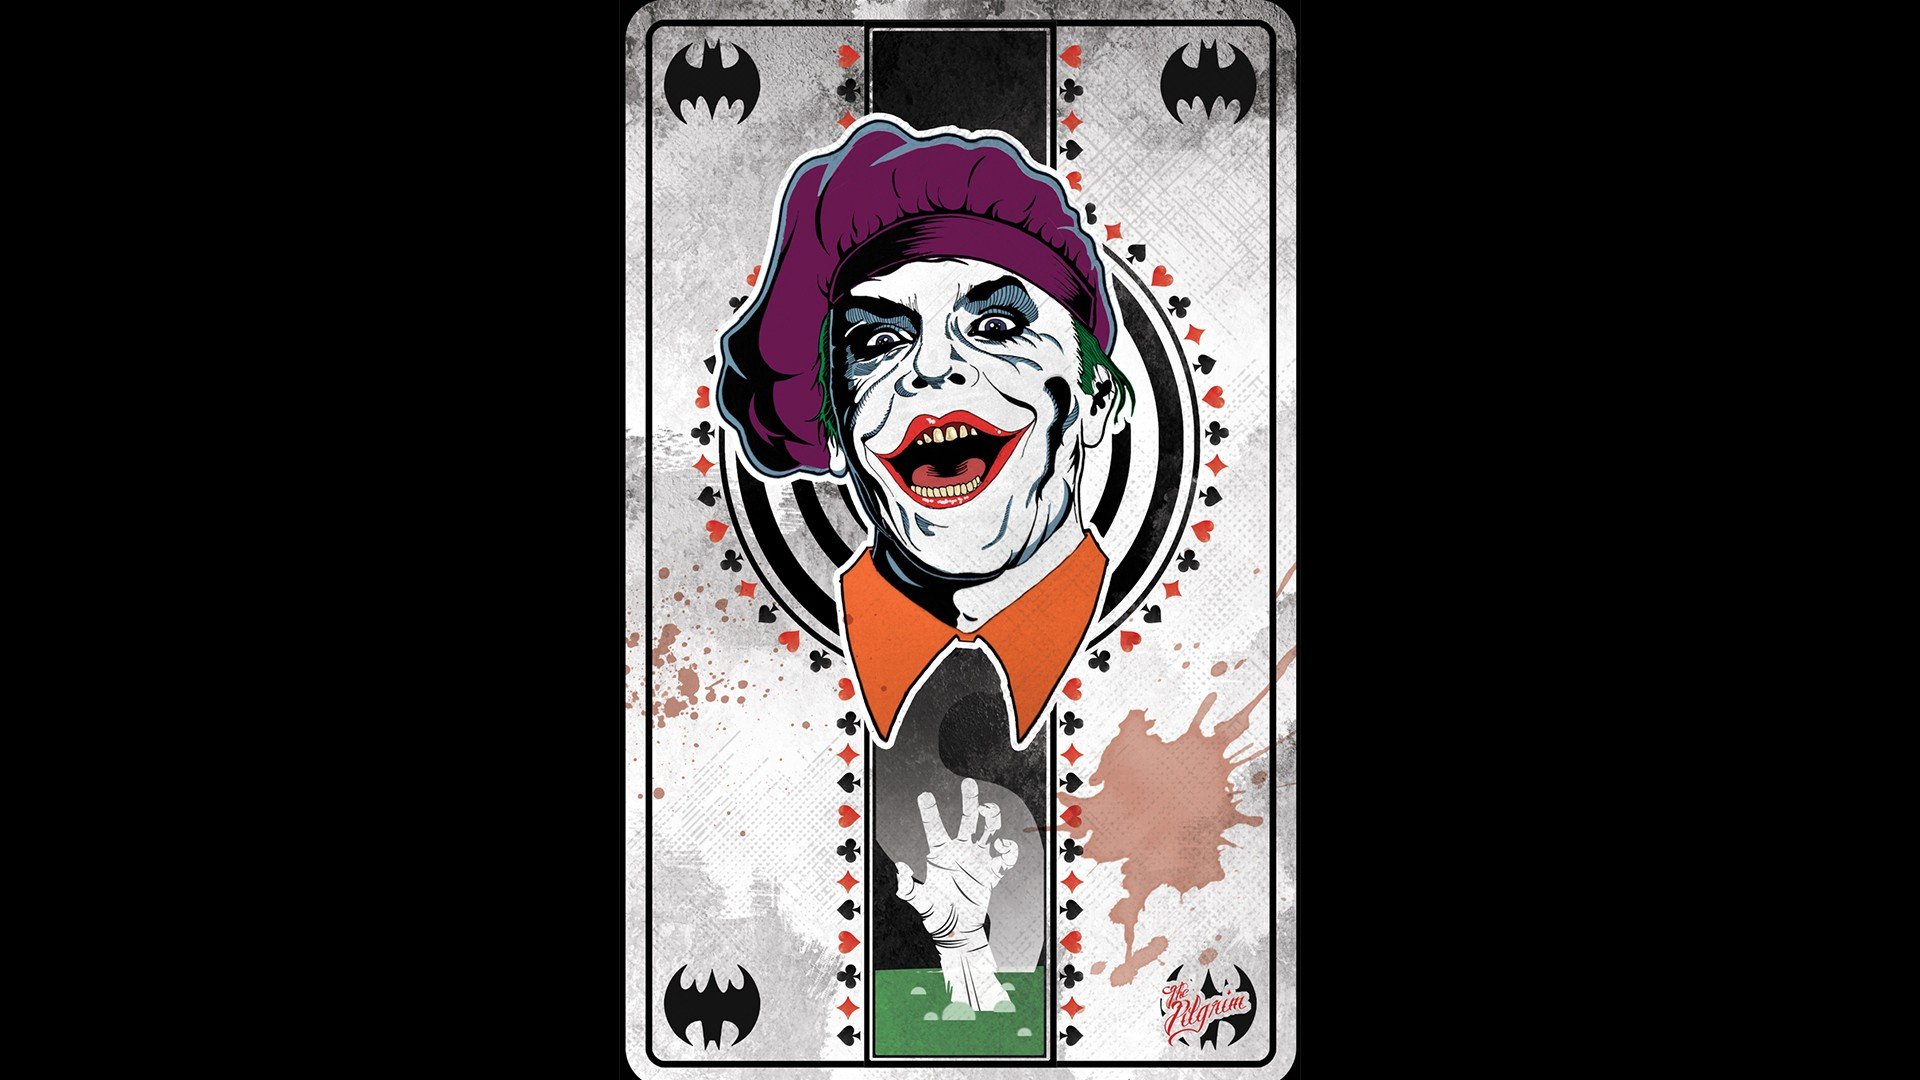 Joker Hd Wallpaper For Mobile 1920x1080